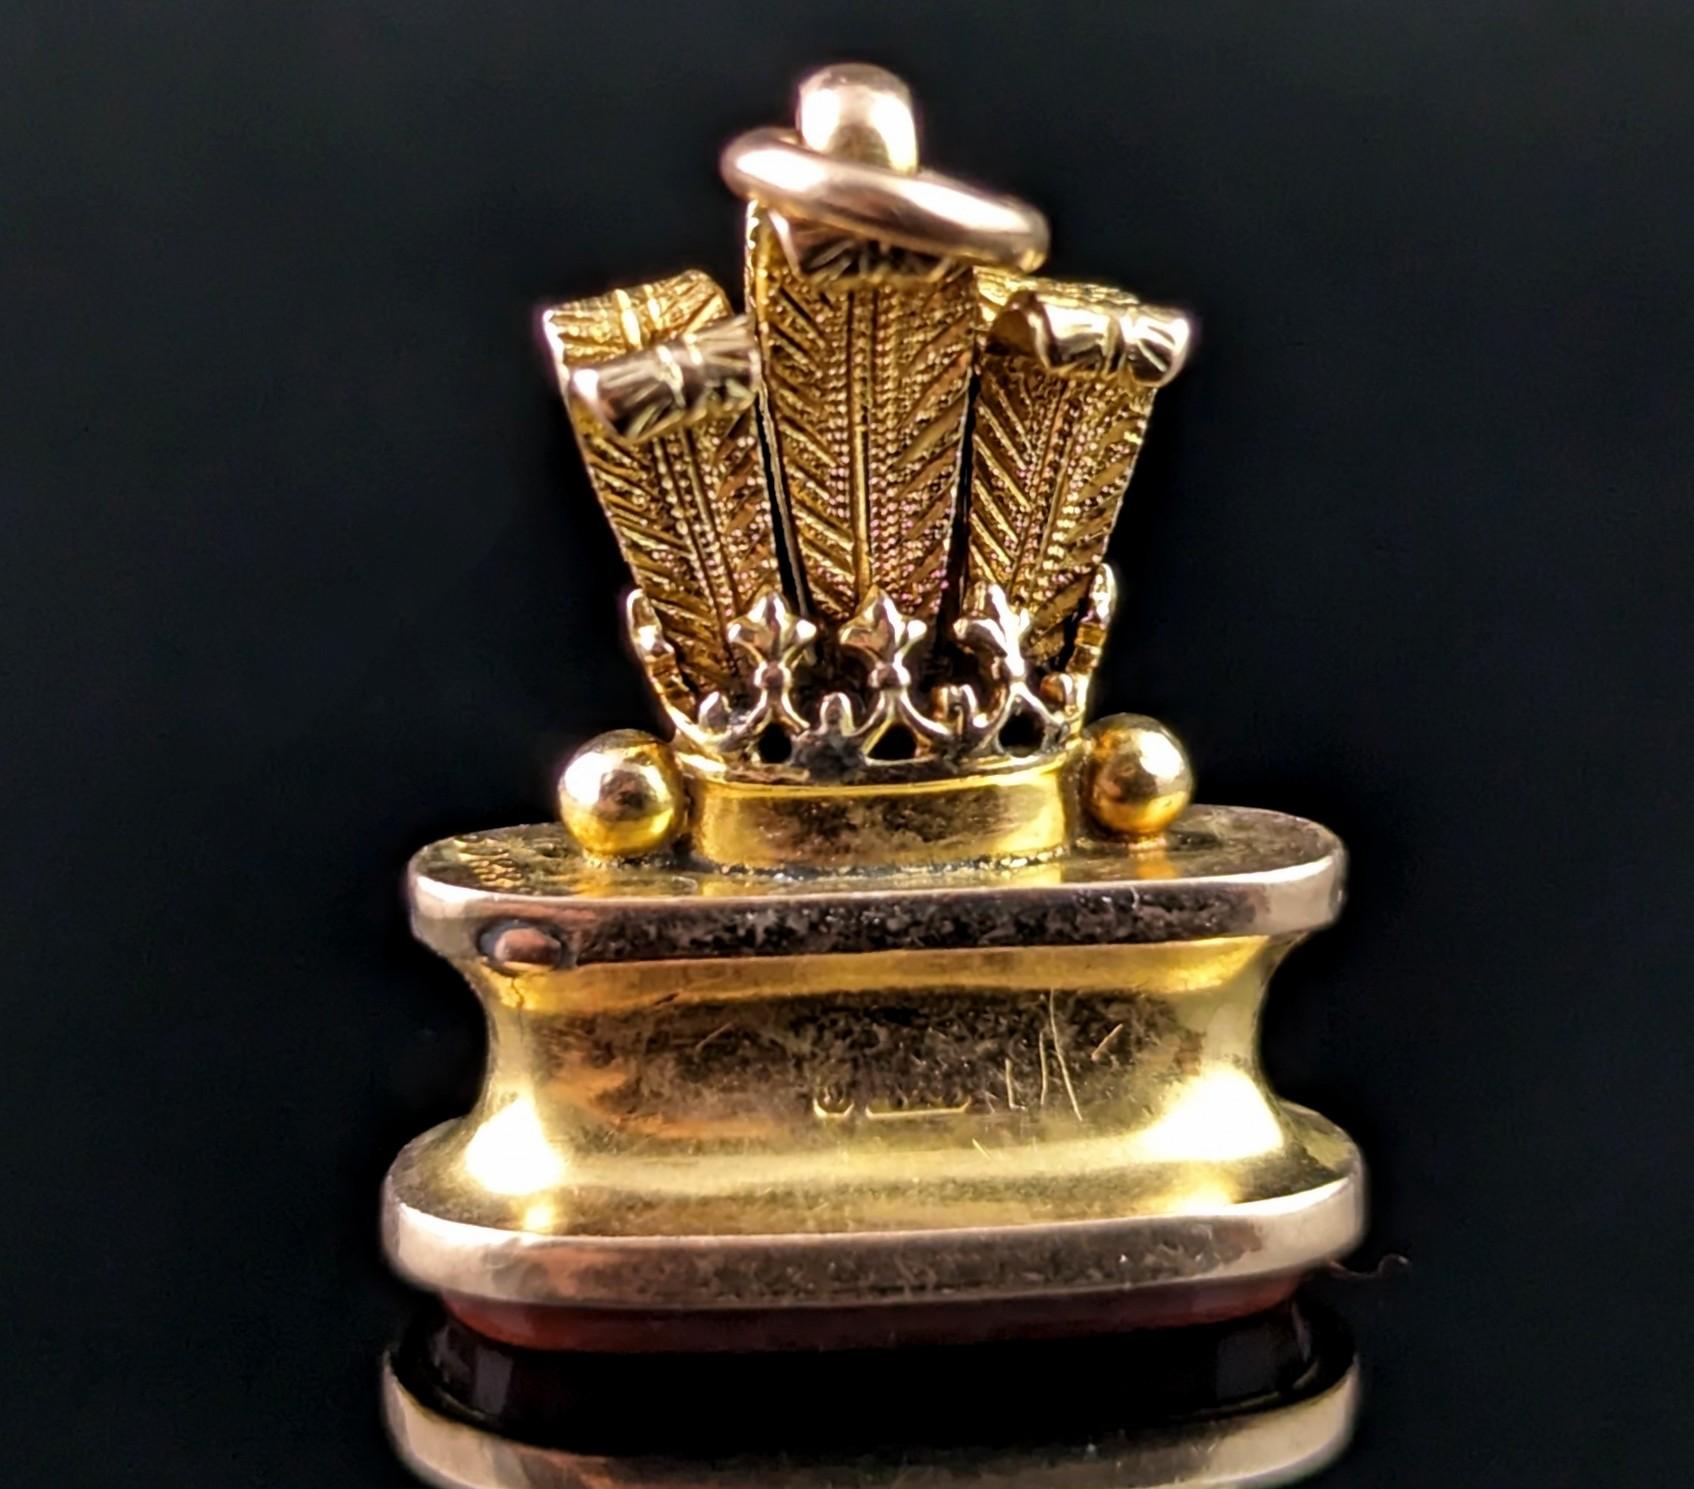 Ein reicher und königlicher antiker Siegelanhänger aus 9-karätigem Gold ist immer eine Freude zu finden.

Dieser Siegelanhänger ist aus gepunztem, massivem 9-karätigem Gold mit einem reichhaltigen, geblümten Finish gefertigt. Frühere gepunzte